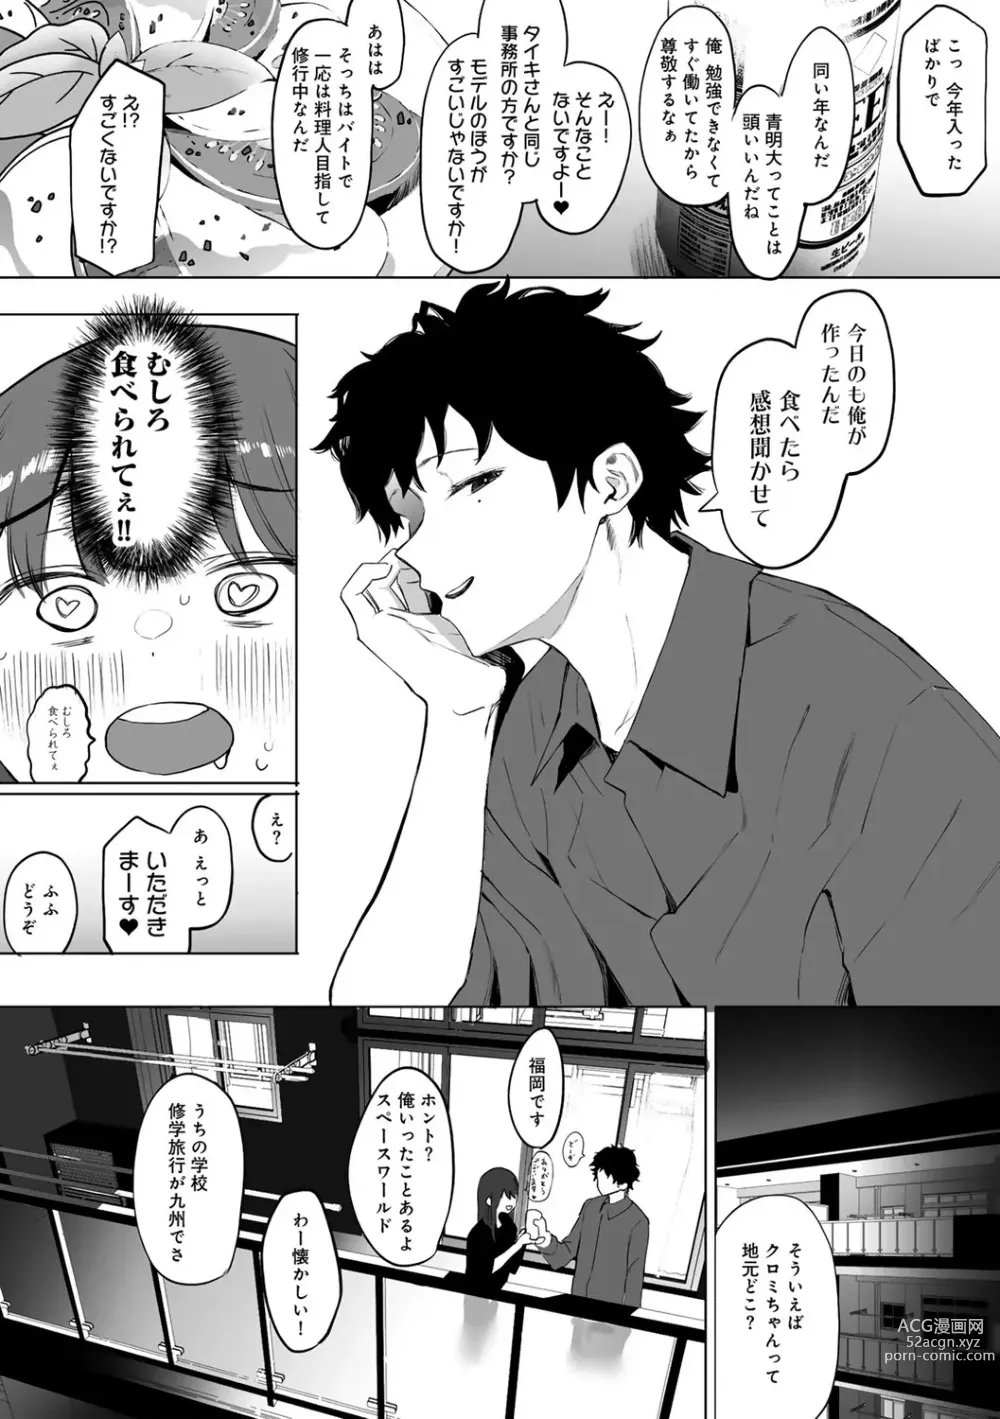 Page 8 of manga COMIC kisshug vol.3